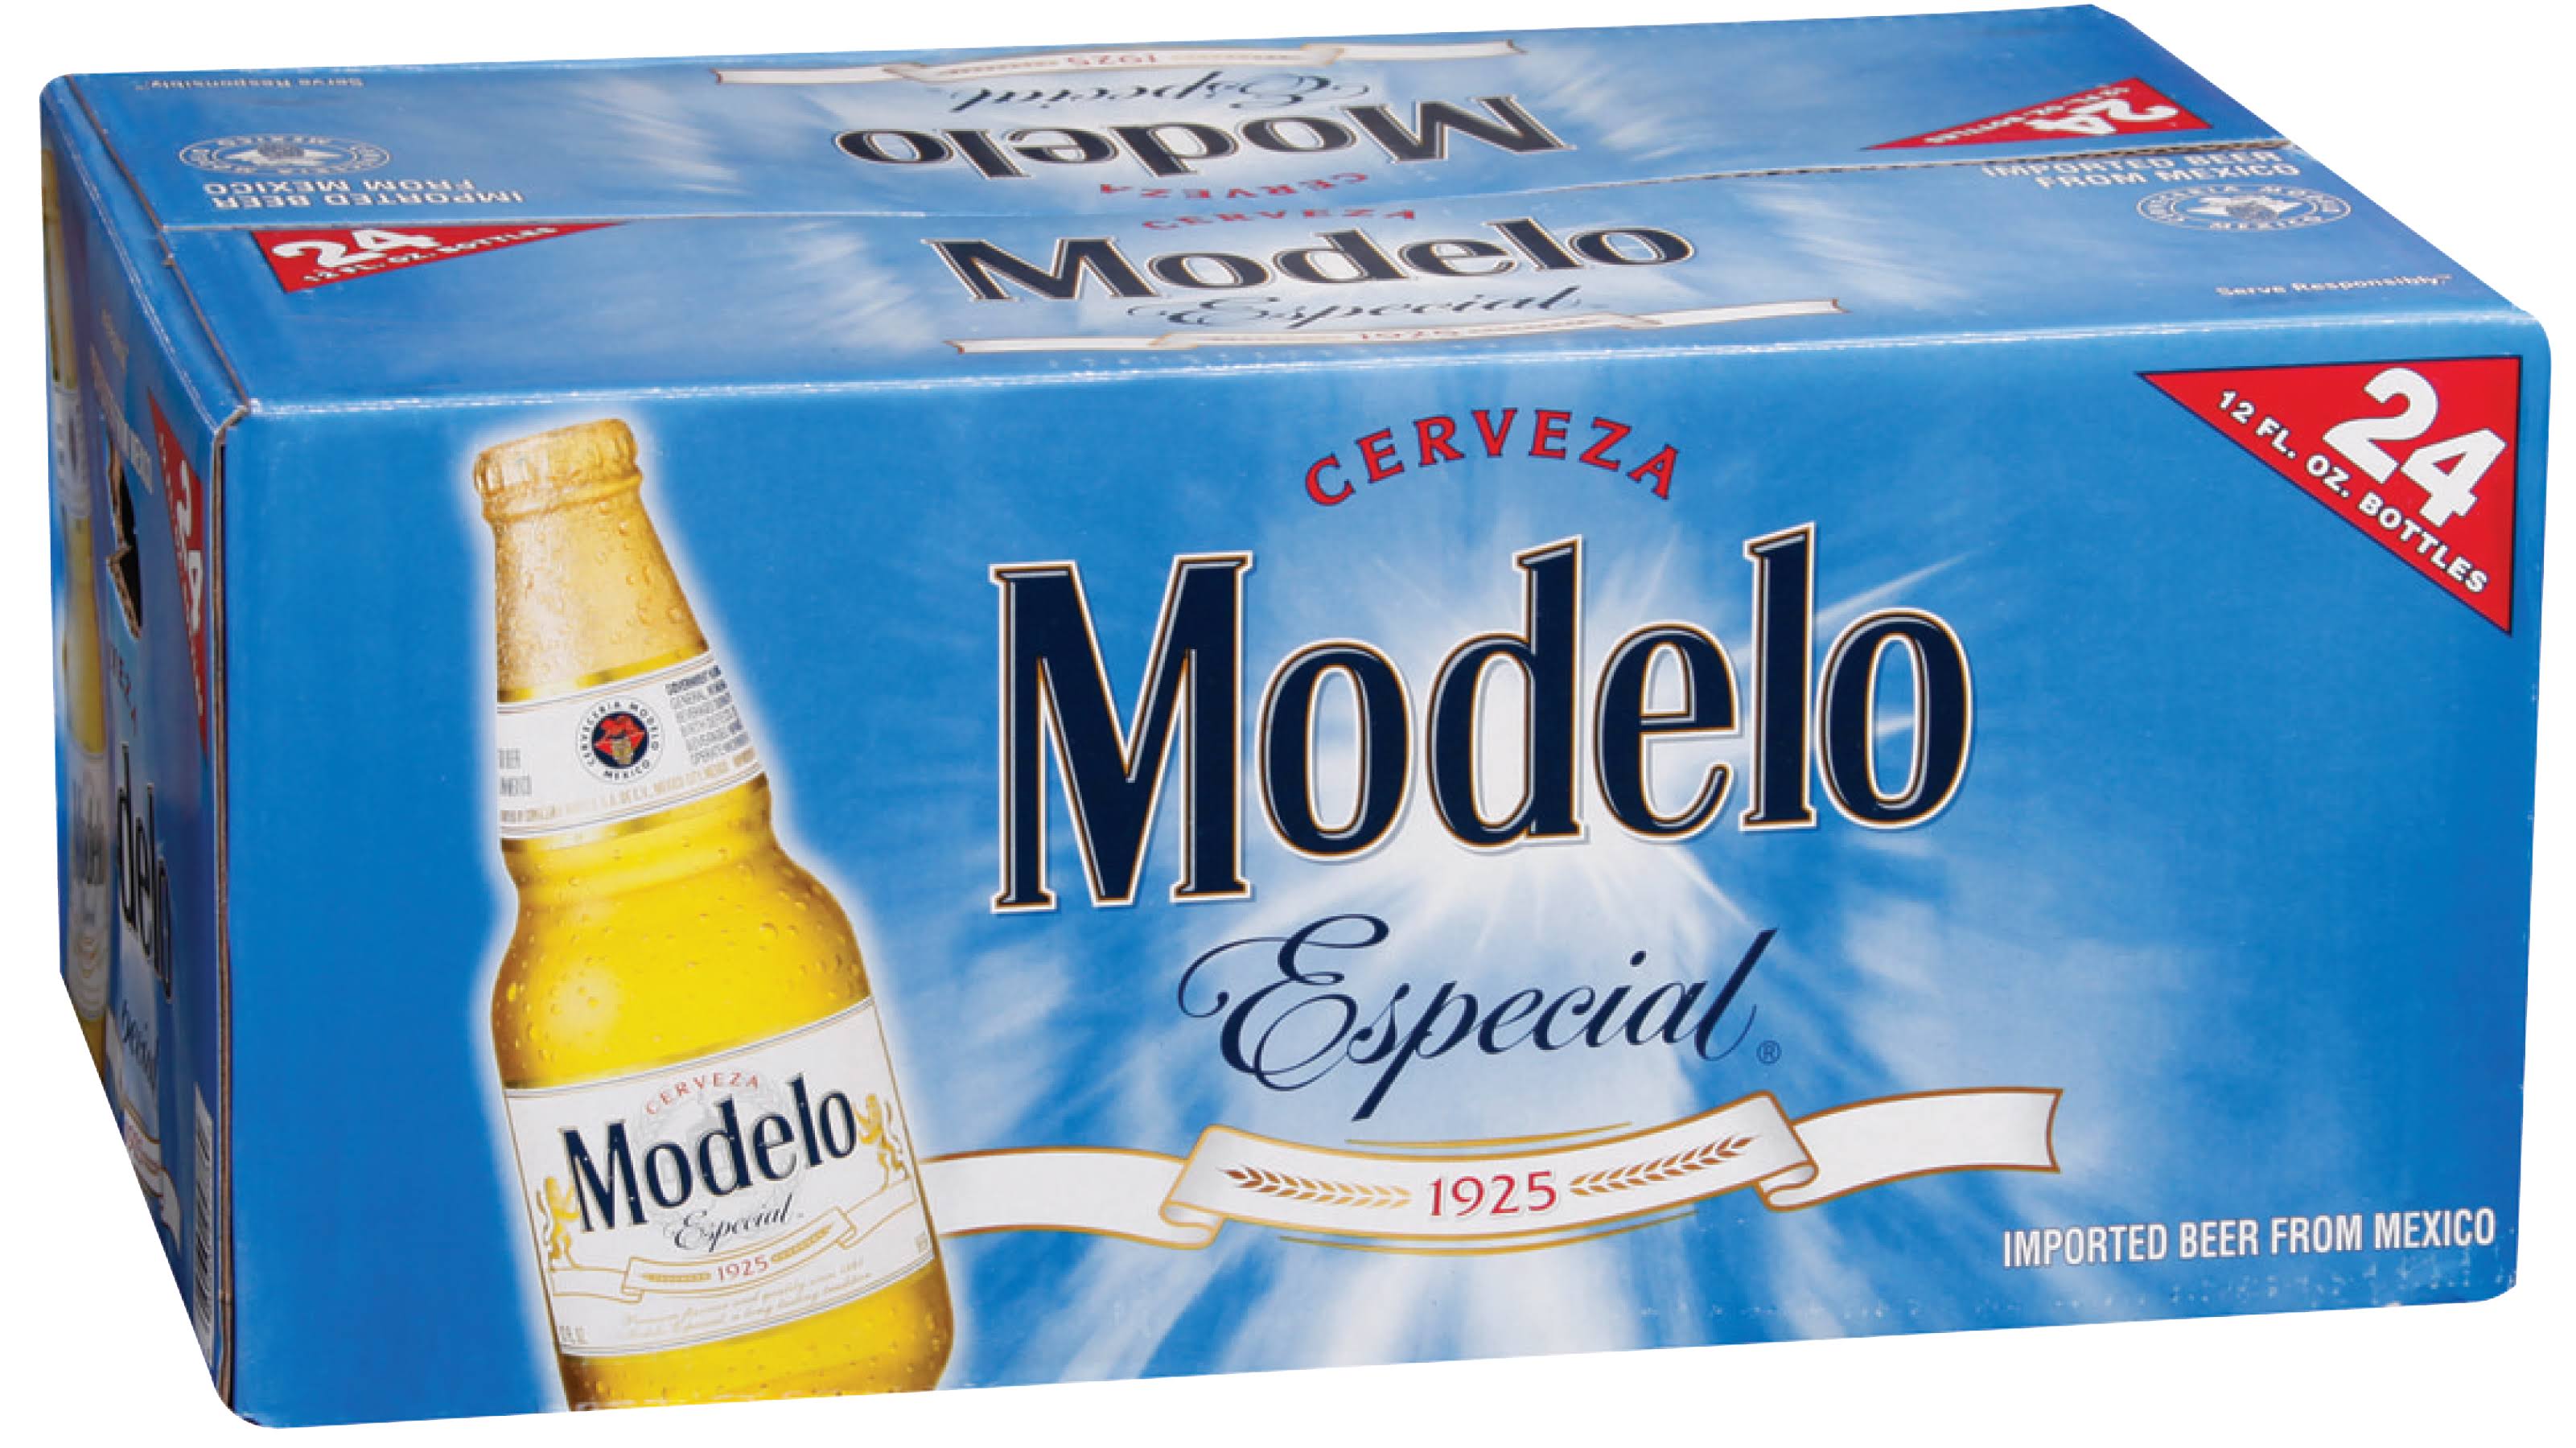 Modelo Especial Cerveza Beer - 24 Bottles